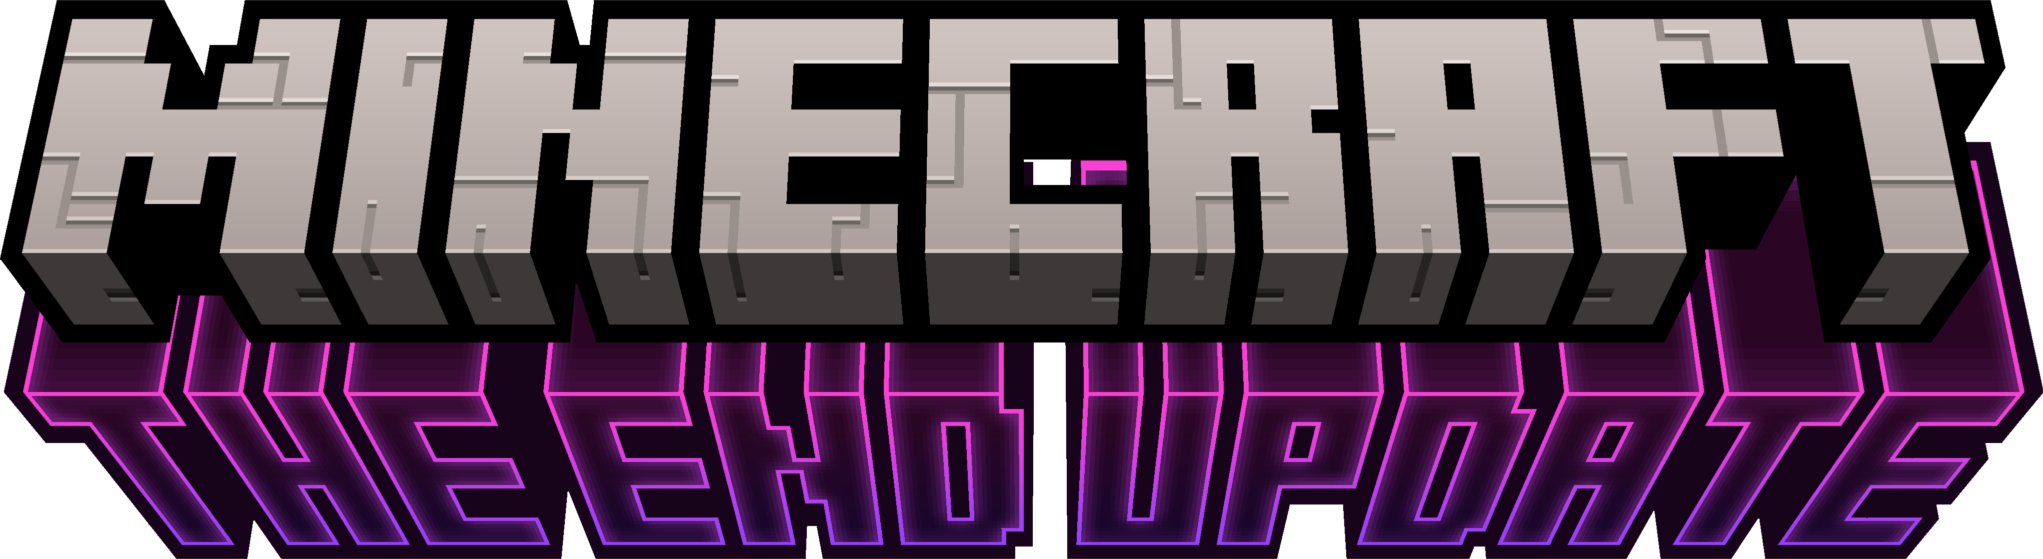 logo minecraft the end update